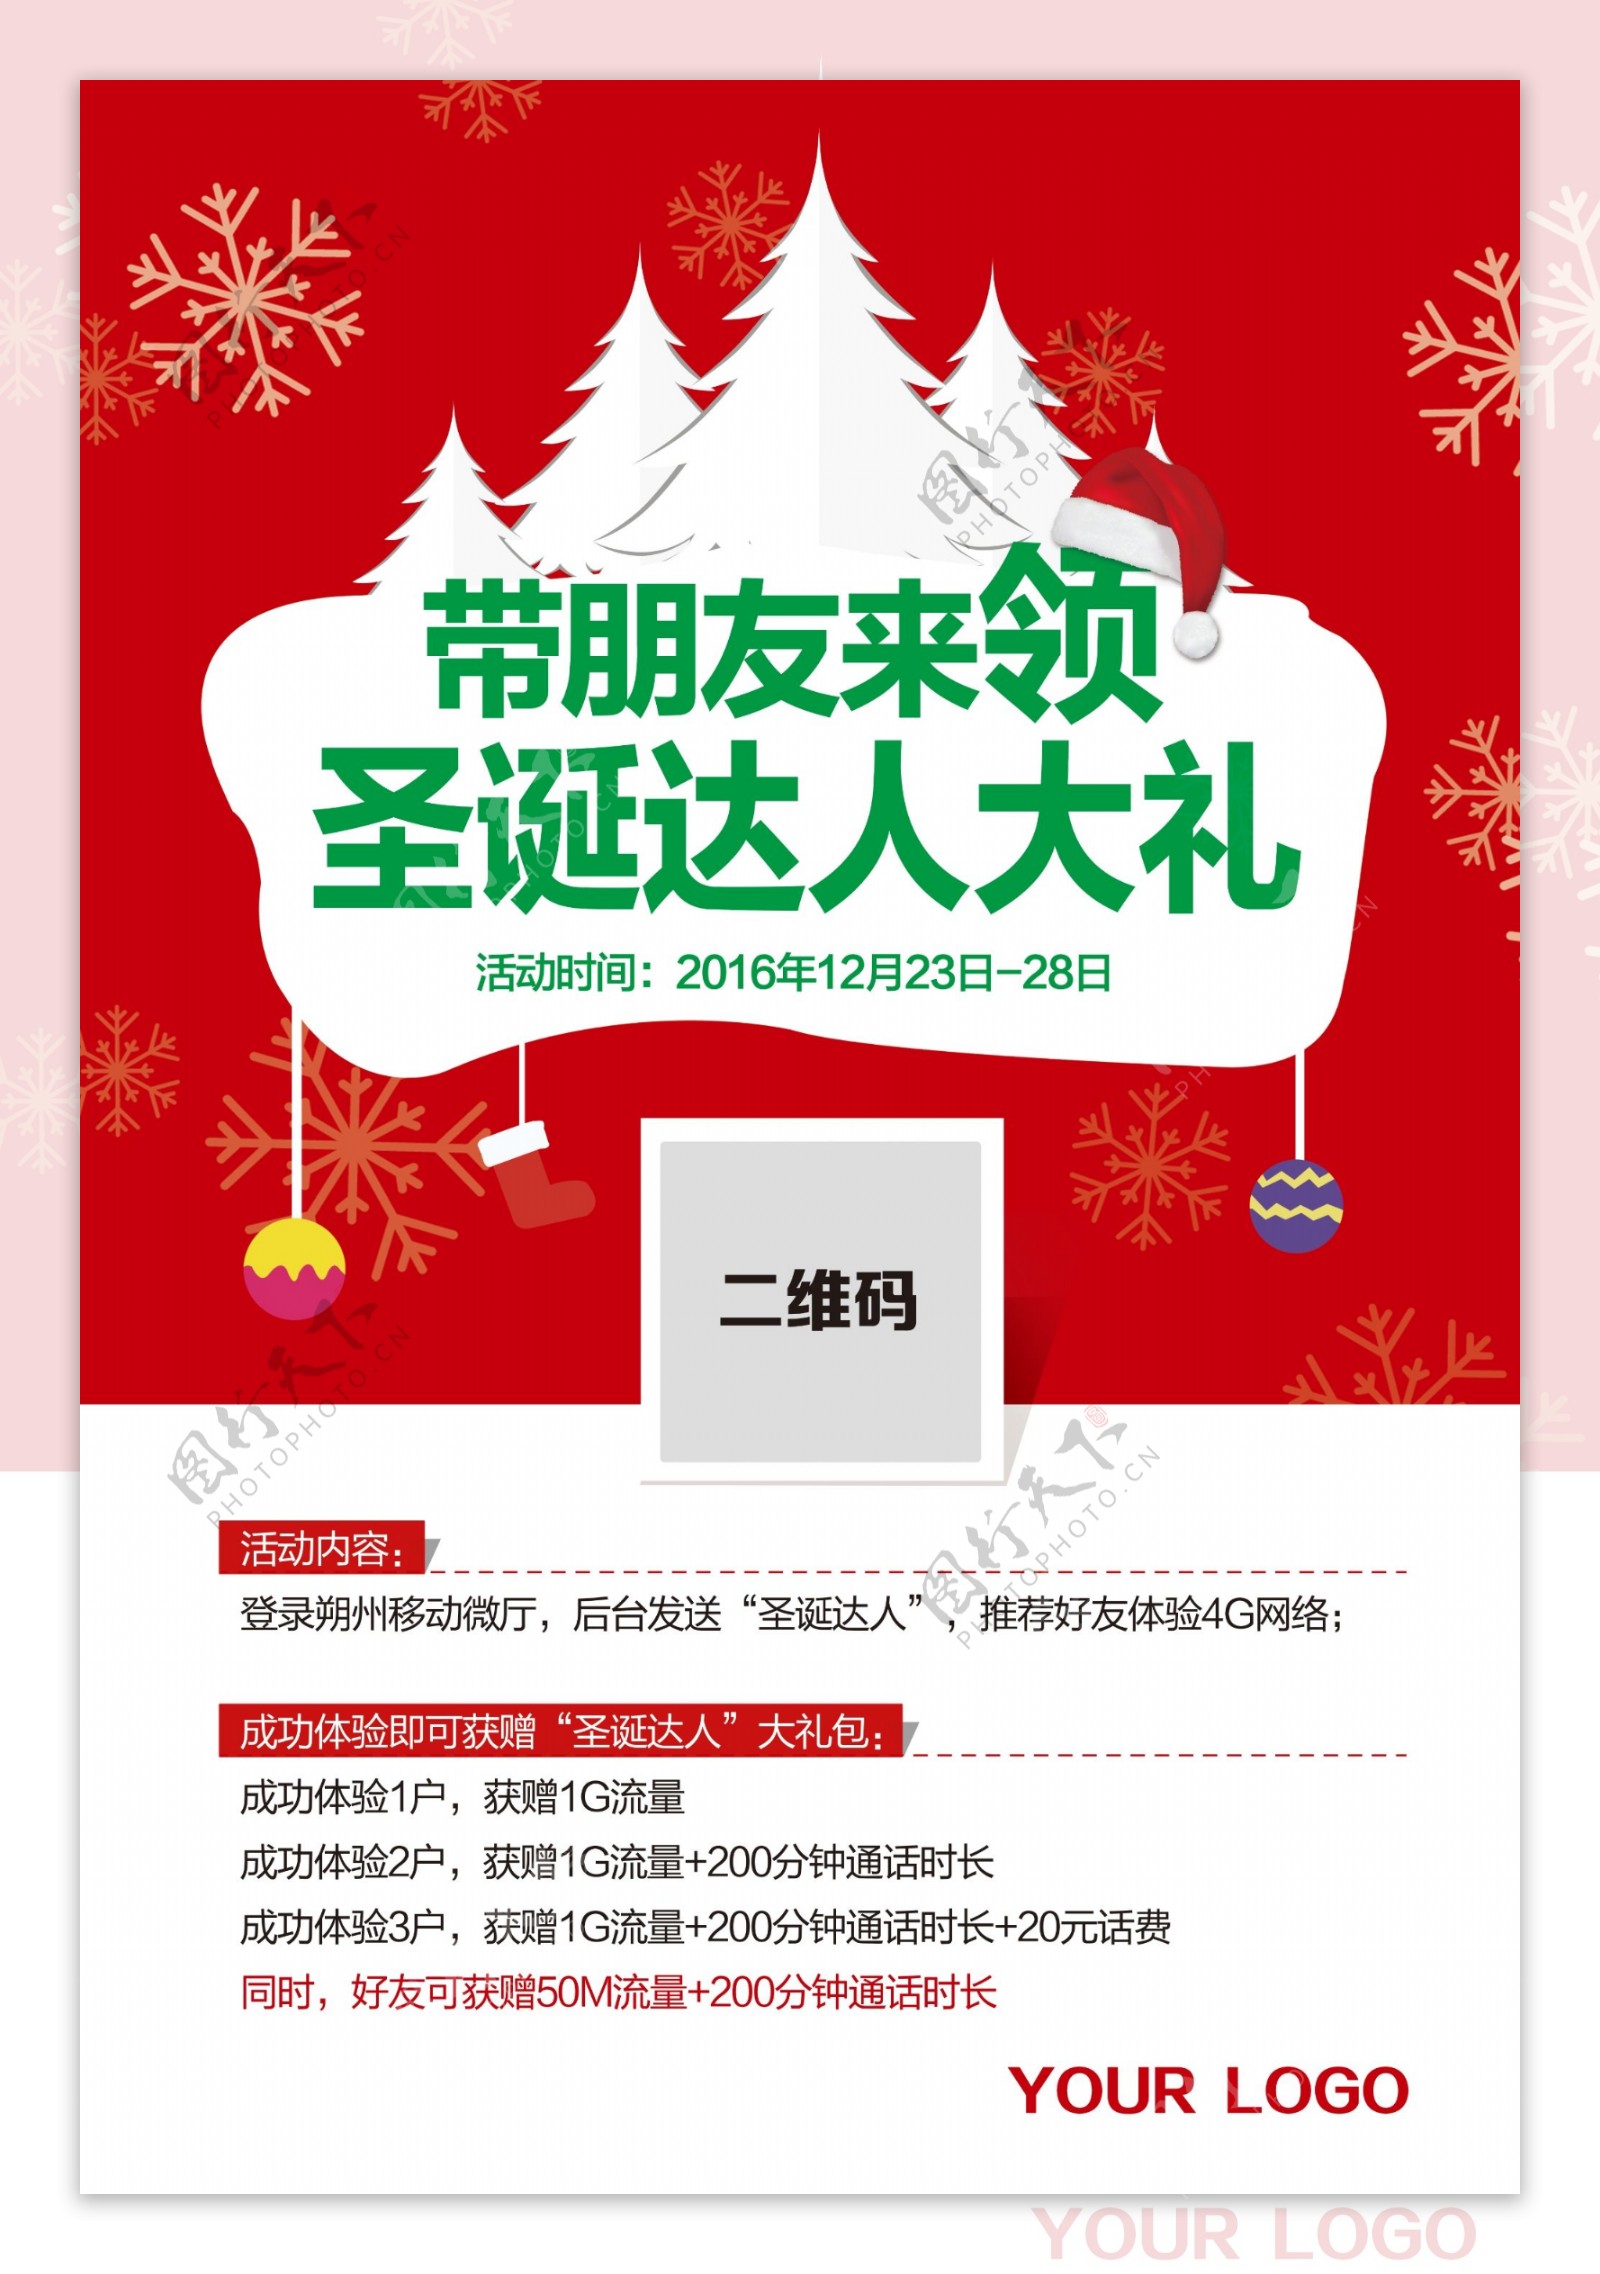 中国移动圣诞节圣诞达人流量海报